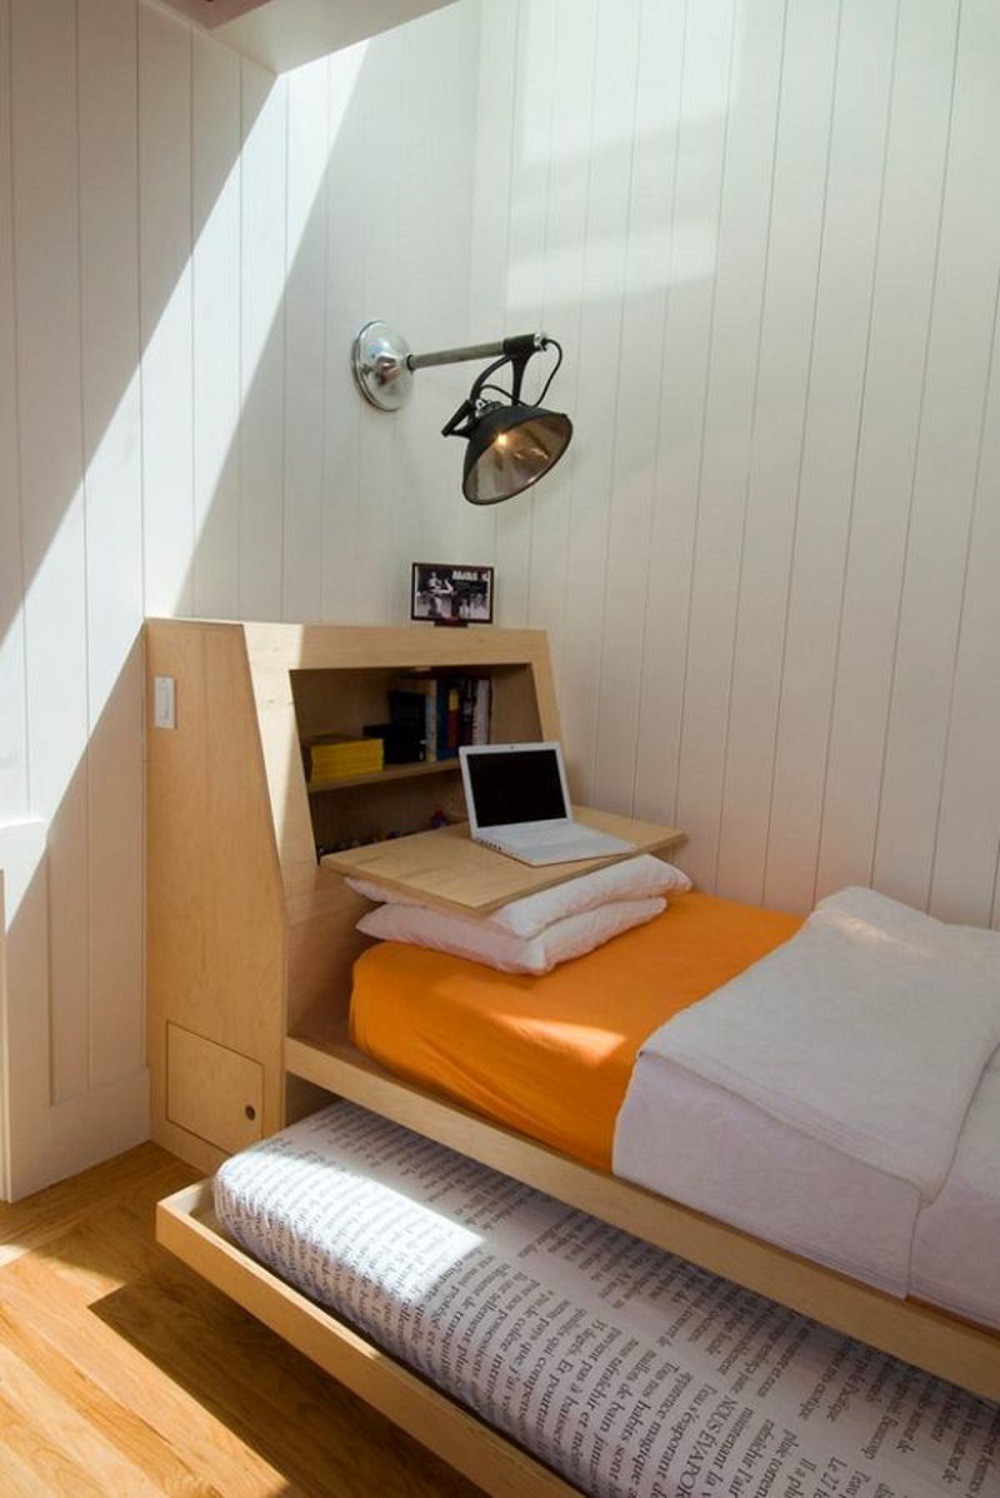 Với giường cho phòng ngủ nhỏ hẹp, bạn không còn phải lo lắng về không gian hẹp khi muốn trang bị cho mình một chiếc giường thoải mái và tiện nghi. Với mẫu giường thiết kế dành riêng cho phòng nhỏ, bạn sẽ có thêm không gian để sắp xếp các vật dụng cá nhân. Bạn sẽ thấy đây là một sự lựa chọn thông minh và tiết kiệm.